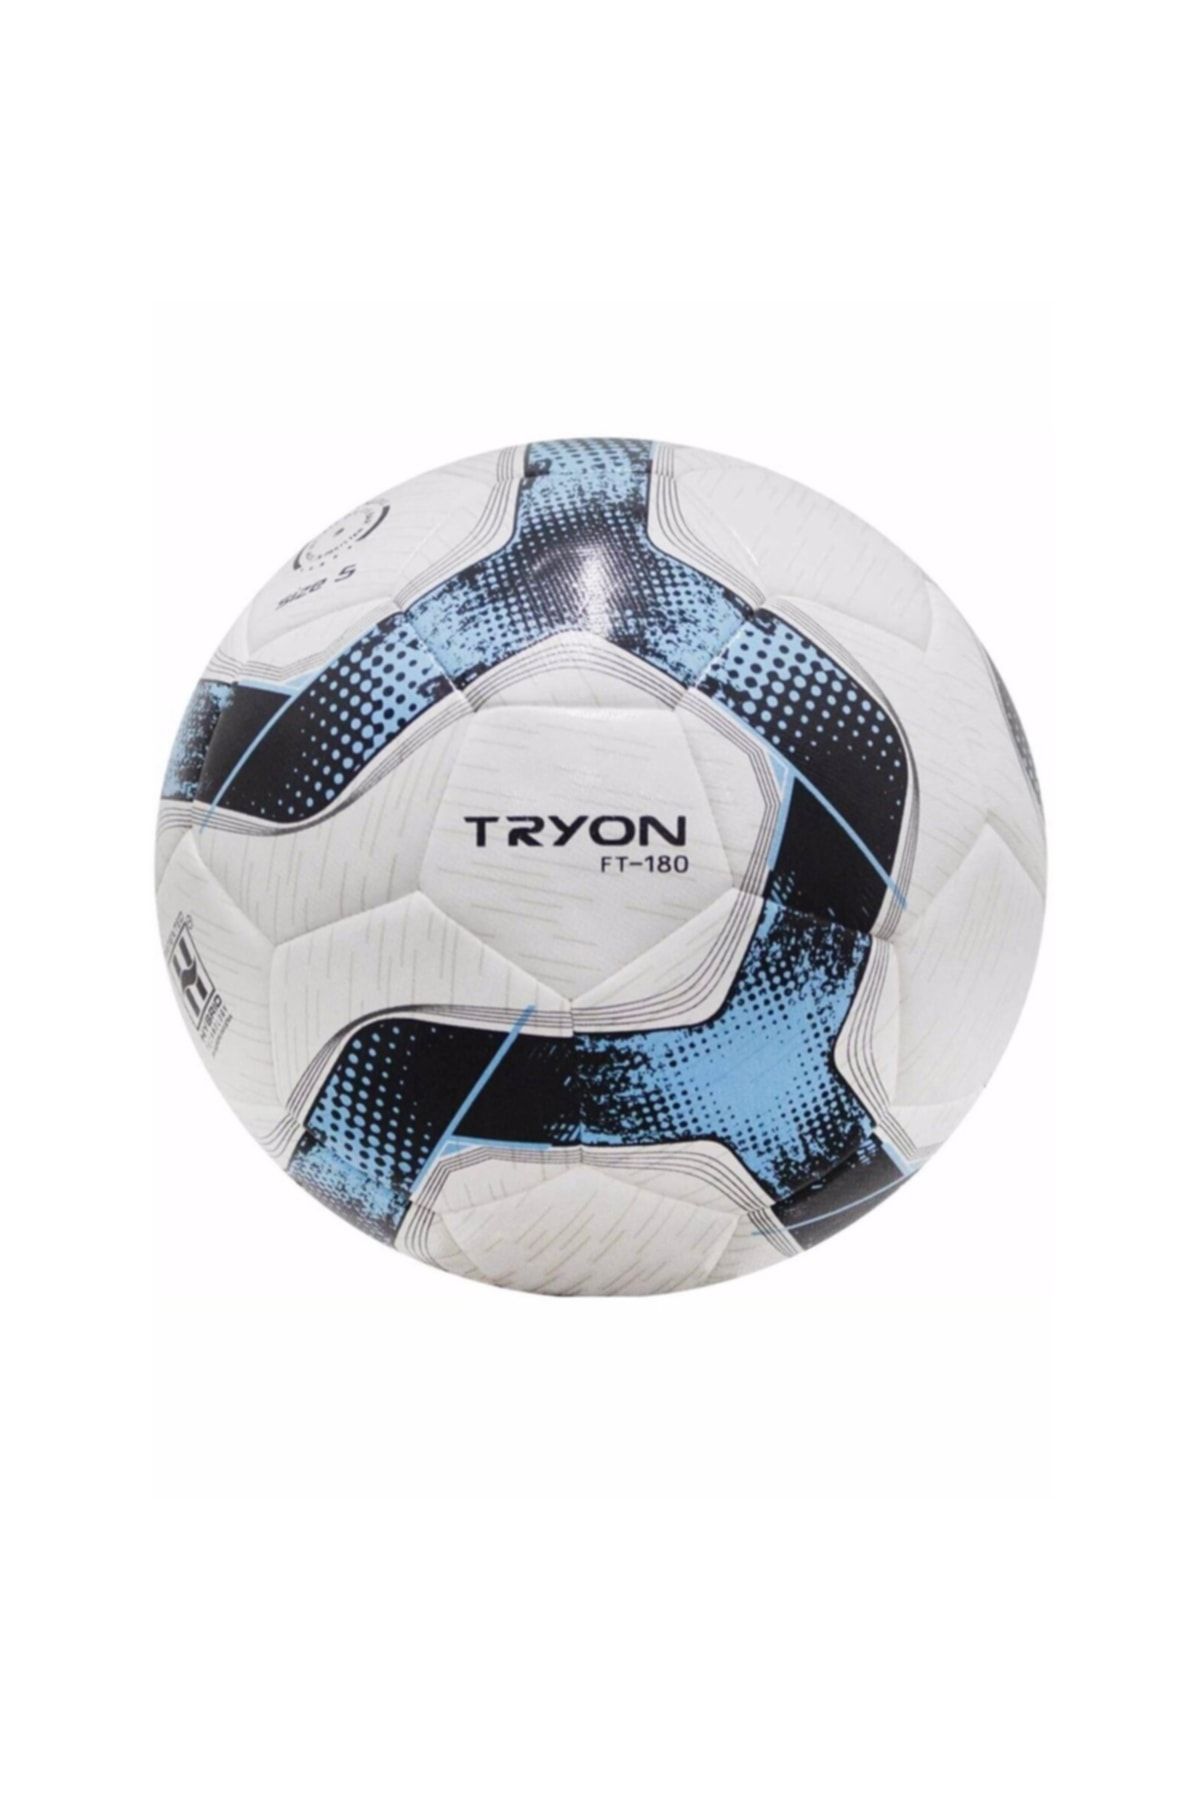 TRYON Ft-180 Futbol Topu